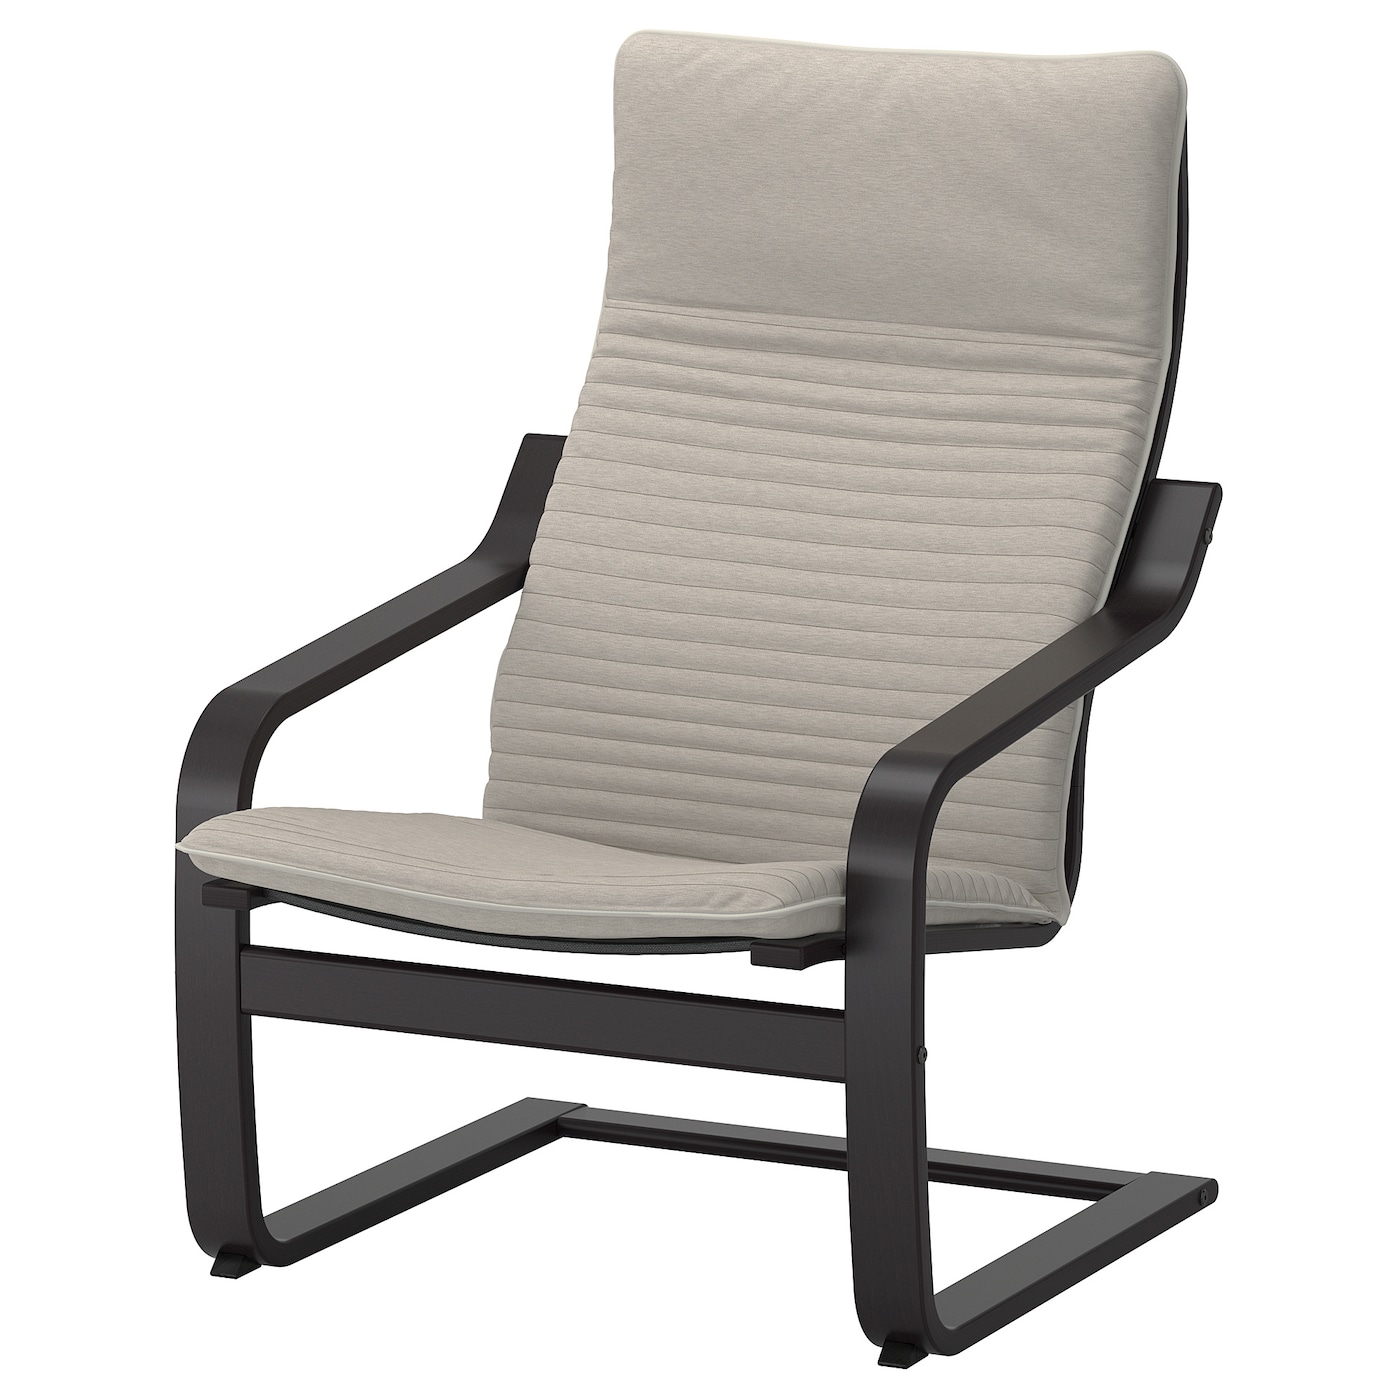 ПОЭНГ Кресло, черно-коричневый/Книса светло-бежевый POÄNG IKEA